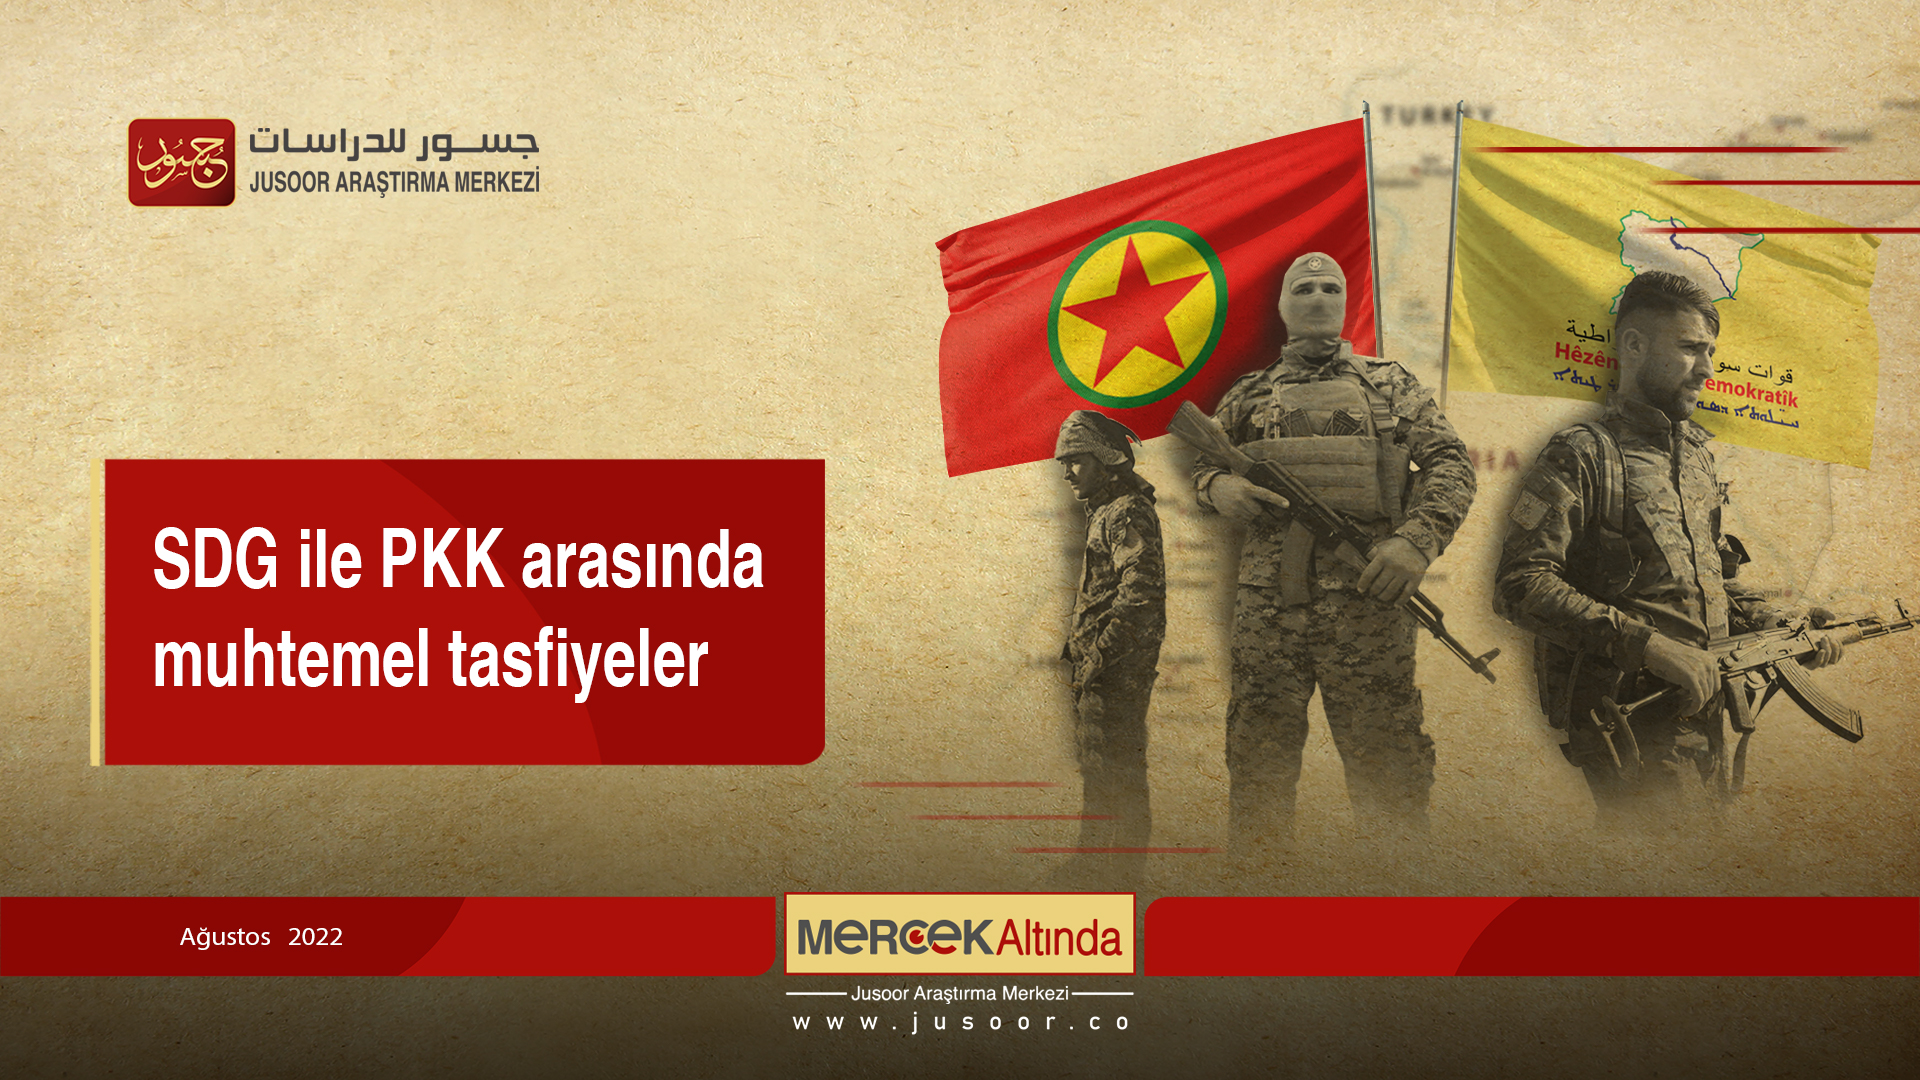 SDG ile PKK arasında muhtemel tasfiyeler